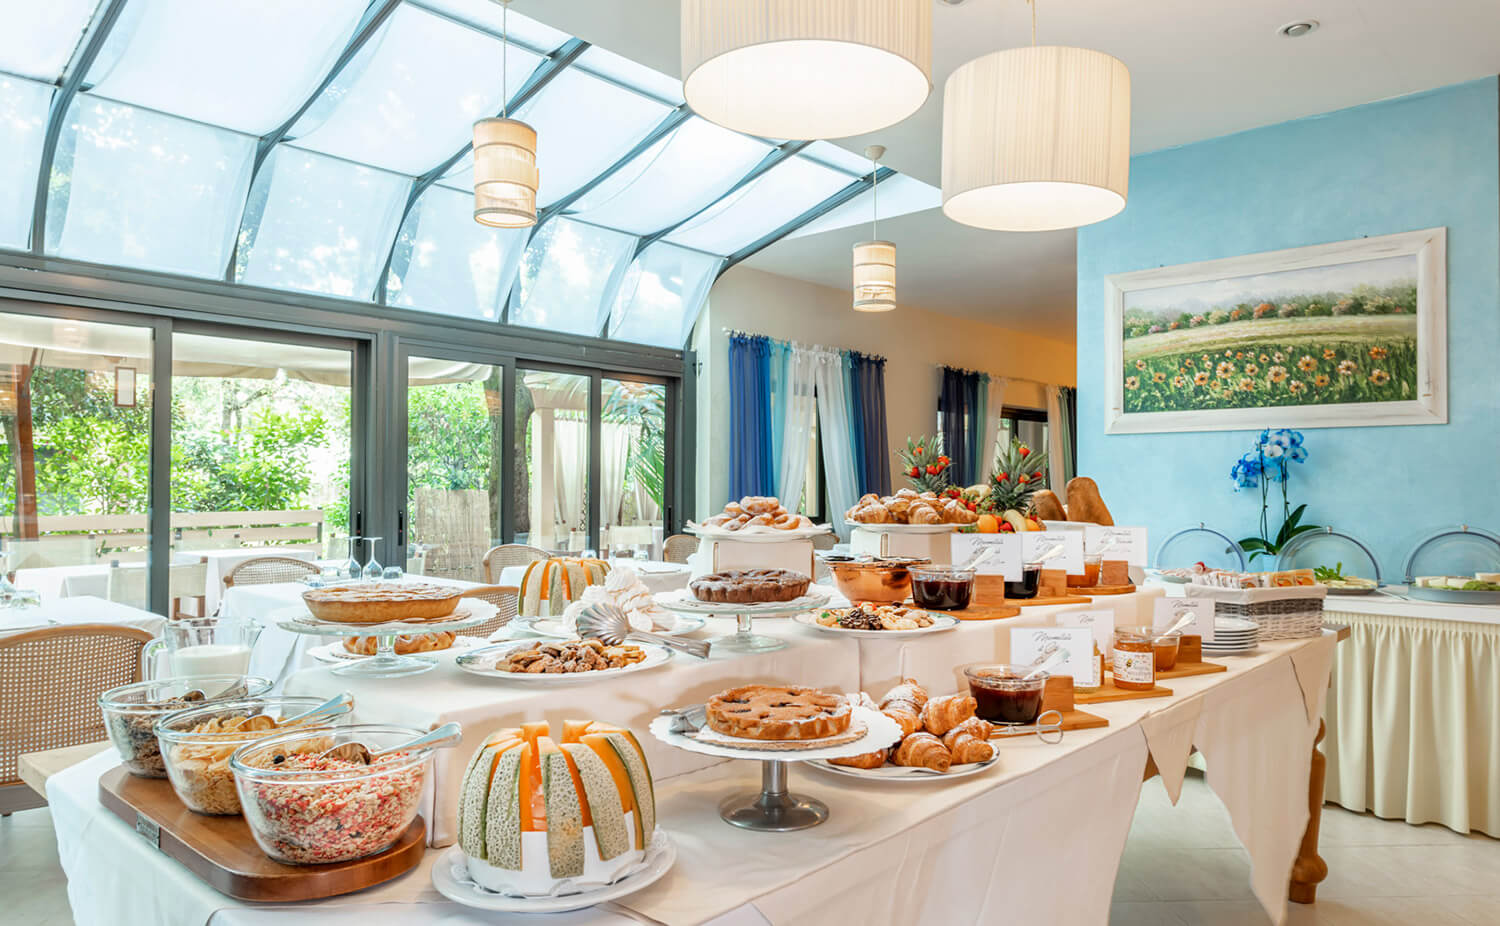 Hotel Andreaneri Marina di Pietrasanta - buffet breakfast dettaglio torte